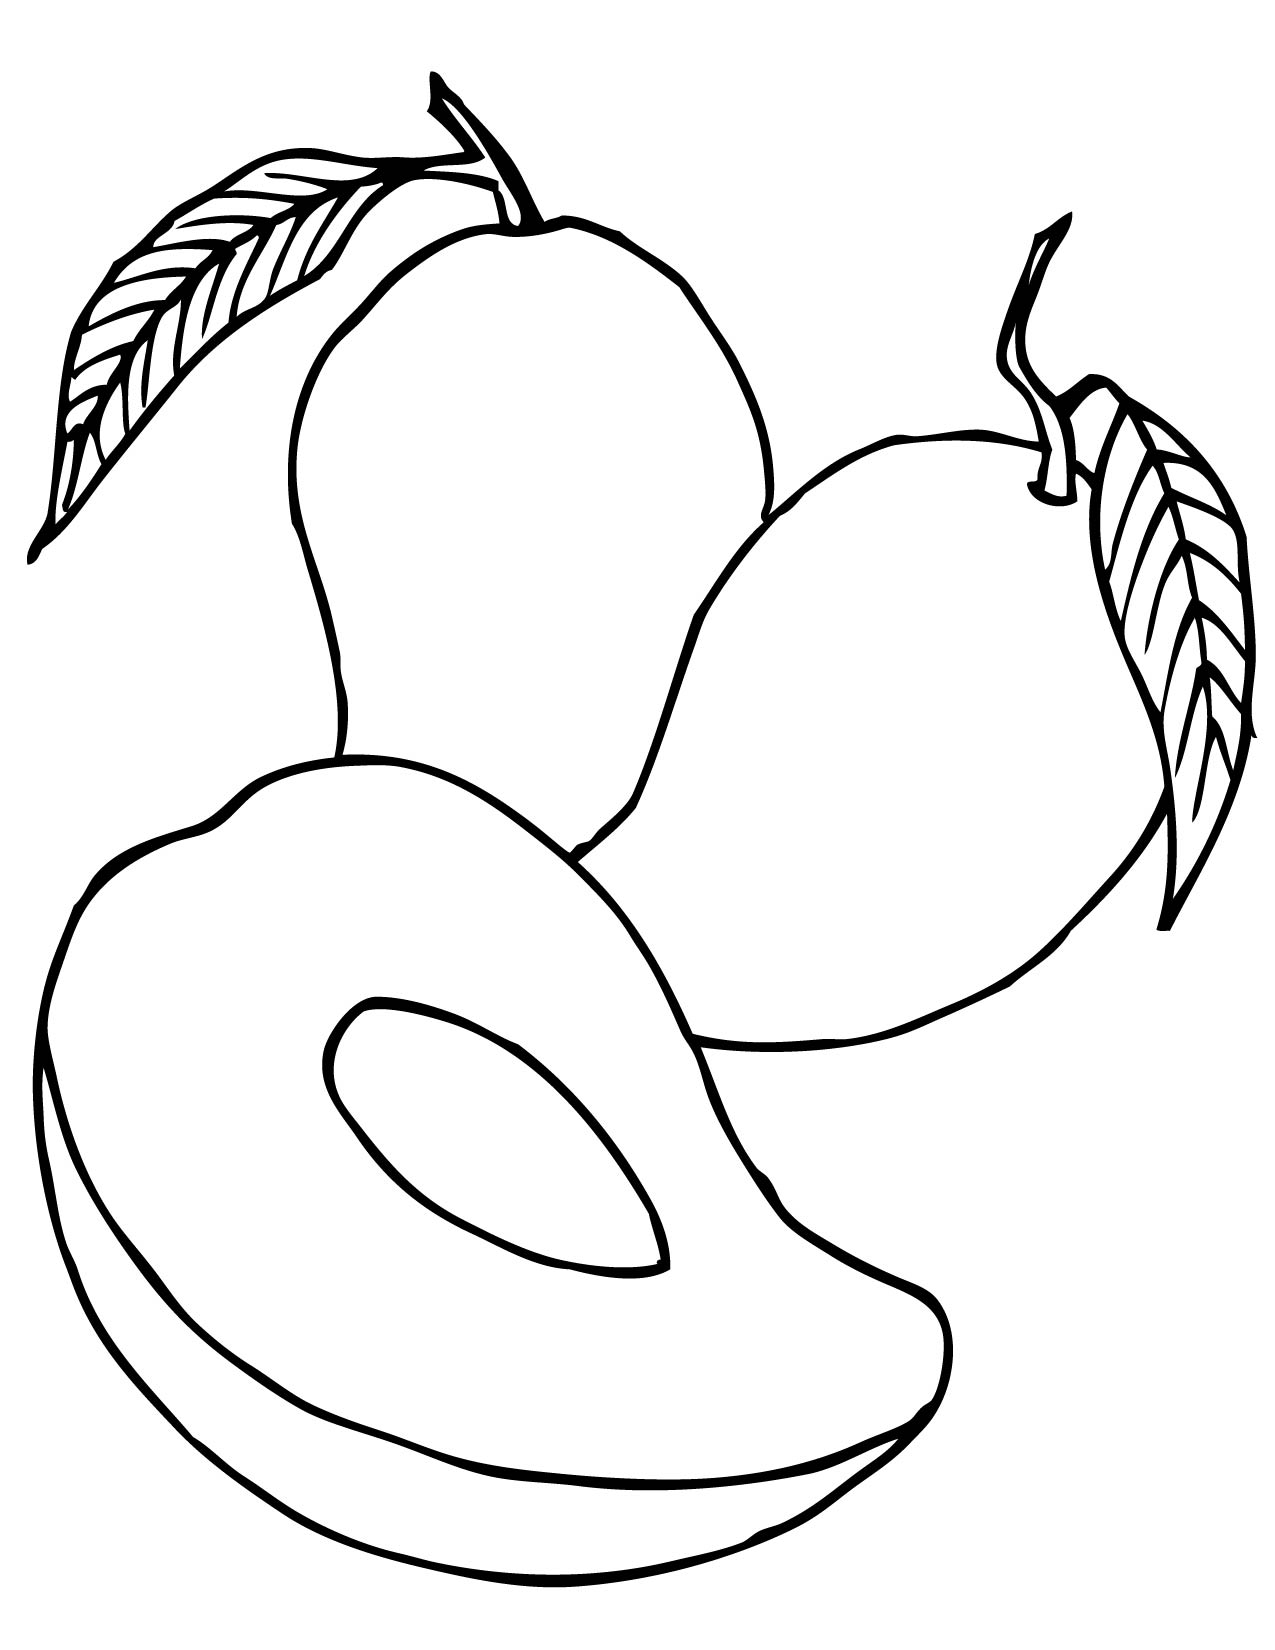 Disegno di Frutto della pera da colorare